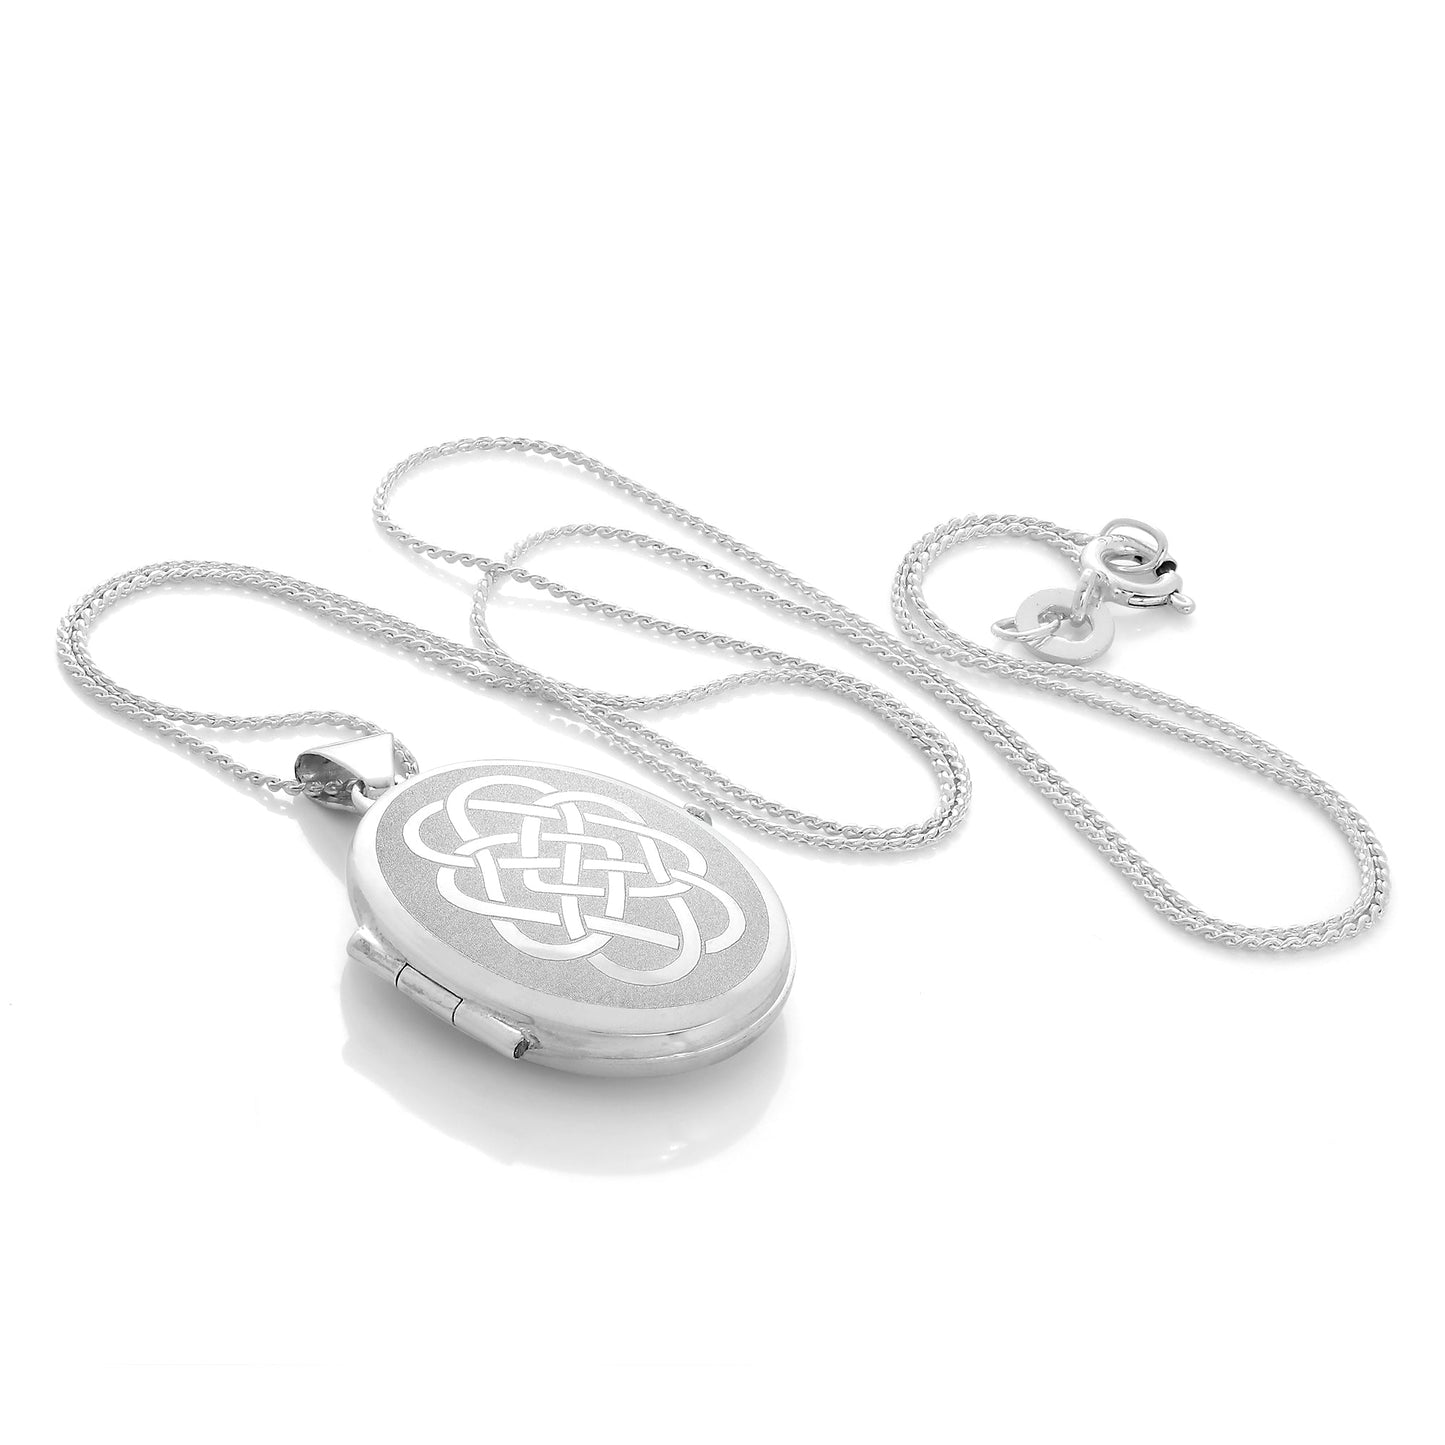 Mattes ovales Sterling Silber Medaillon mit keltischem Knotenmotiv an einer Kette